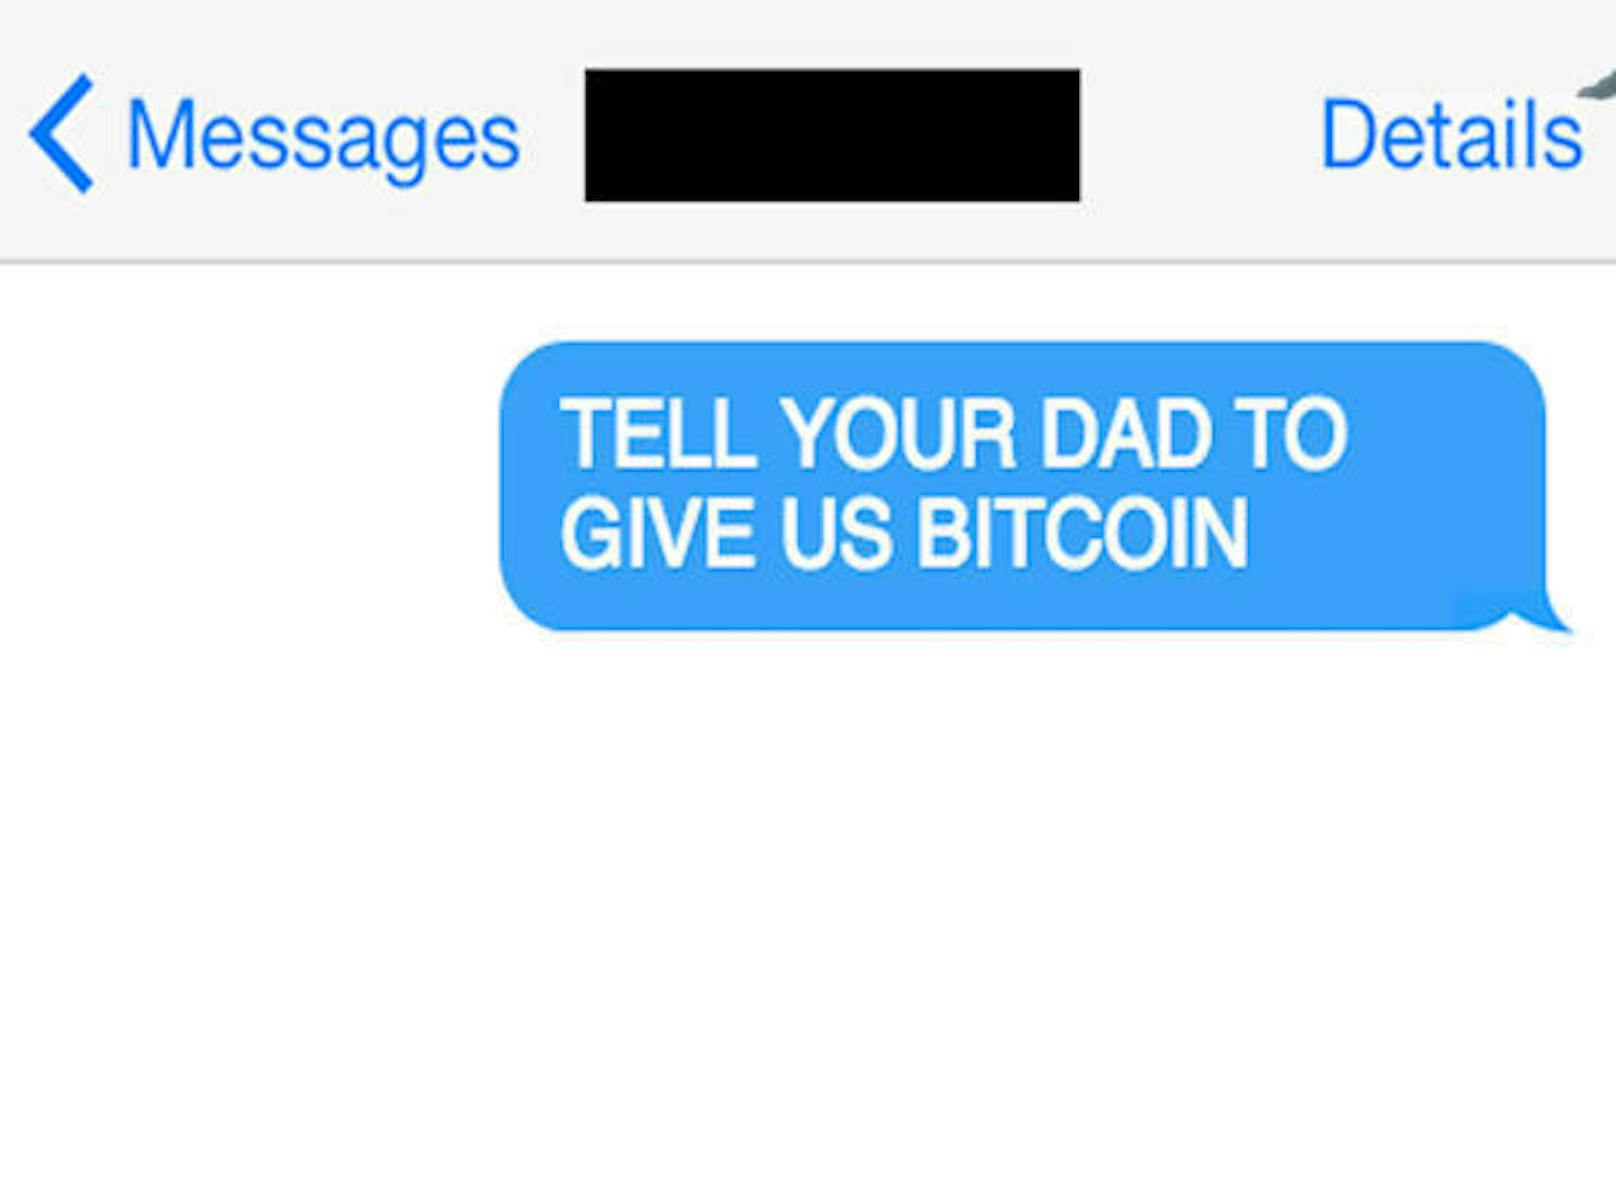 Doch nicht in jedem Fall erhielt er Zugriff. Er bedrängte in einem Fall die Frau, die Tochter und Freunde eines Opfers per SMS: "Sag deinem Vater, er soll uns in Bitcoin bezahlen", schrieb er.